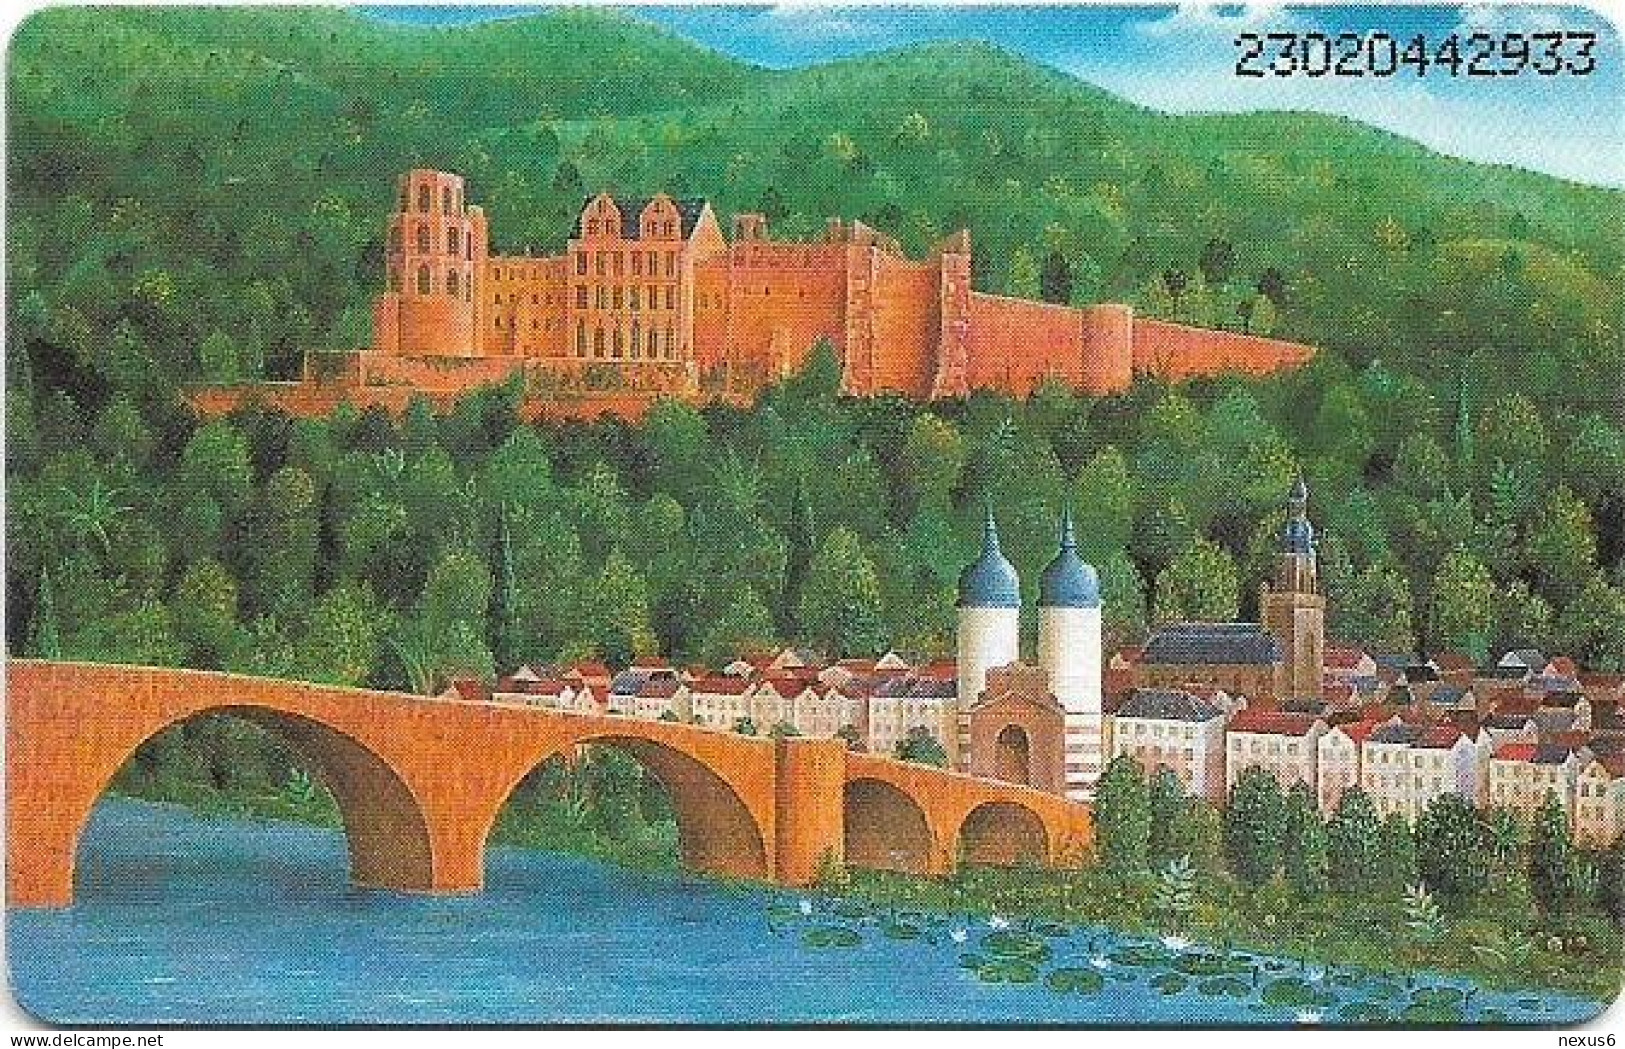 Germany - Sparkasse Heidelberg (Castle) - O 0601 - 03.1993, 6DM, 3.000ex, Mint - O-Serie : Serie Clienti Esclusi Dal Servizio Delle Collezioni